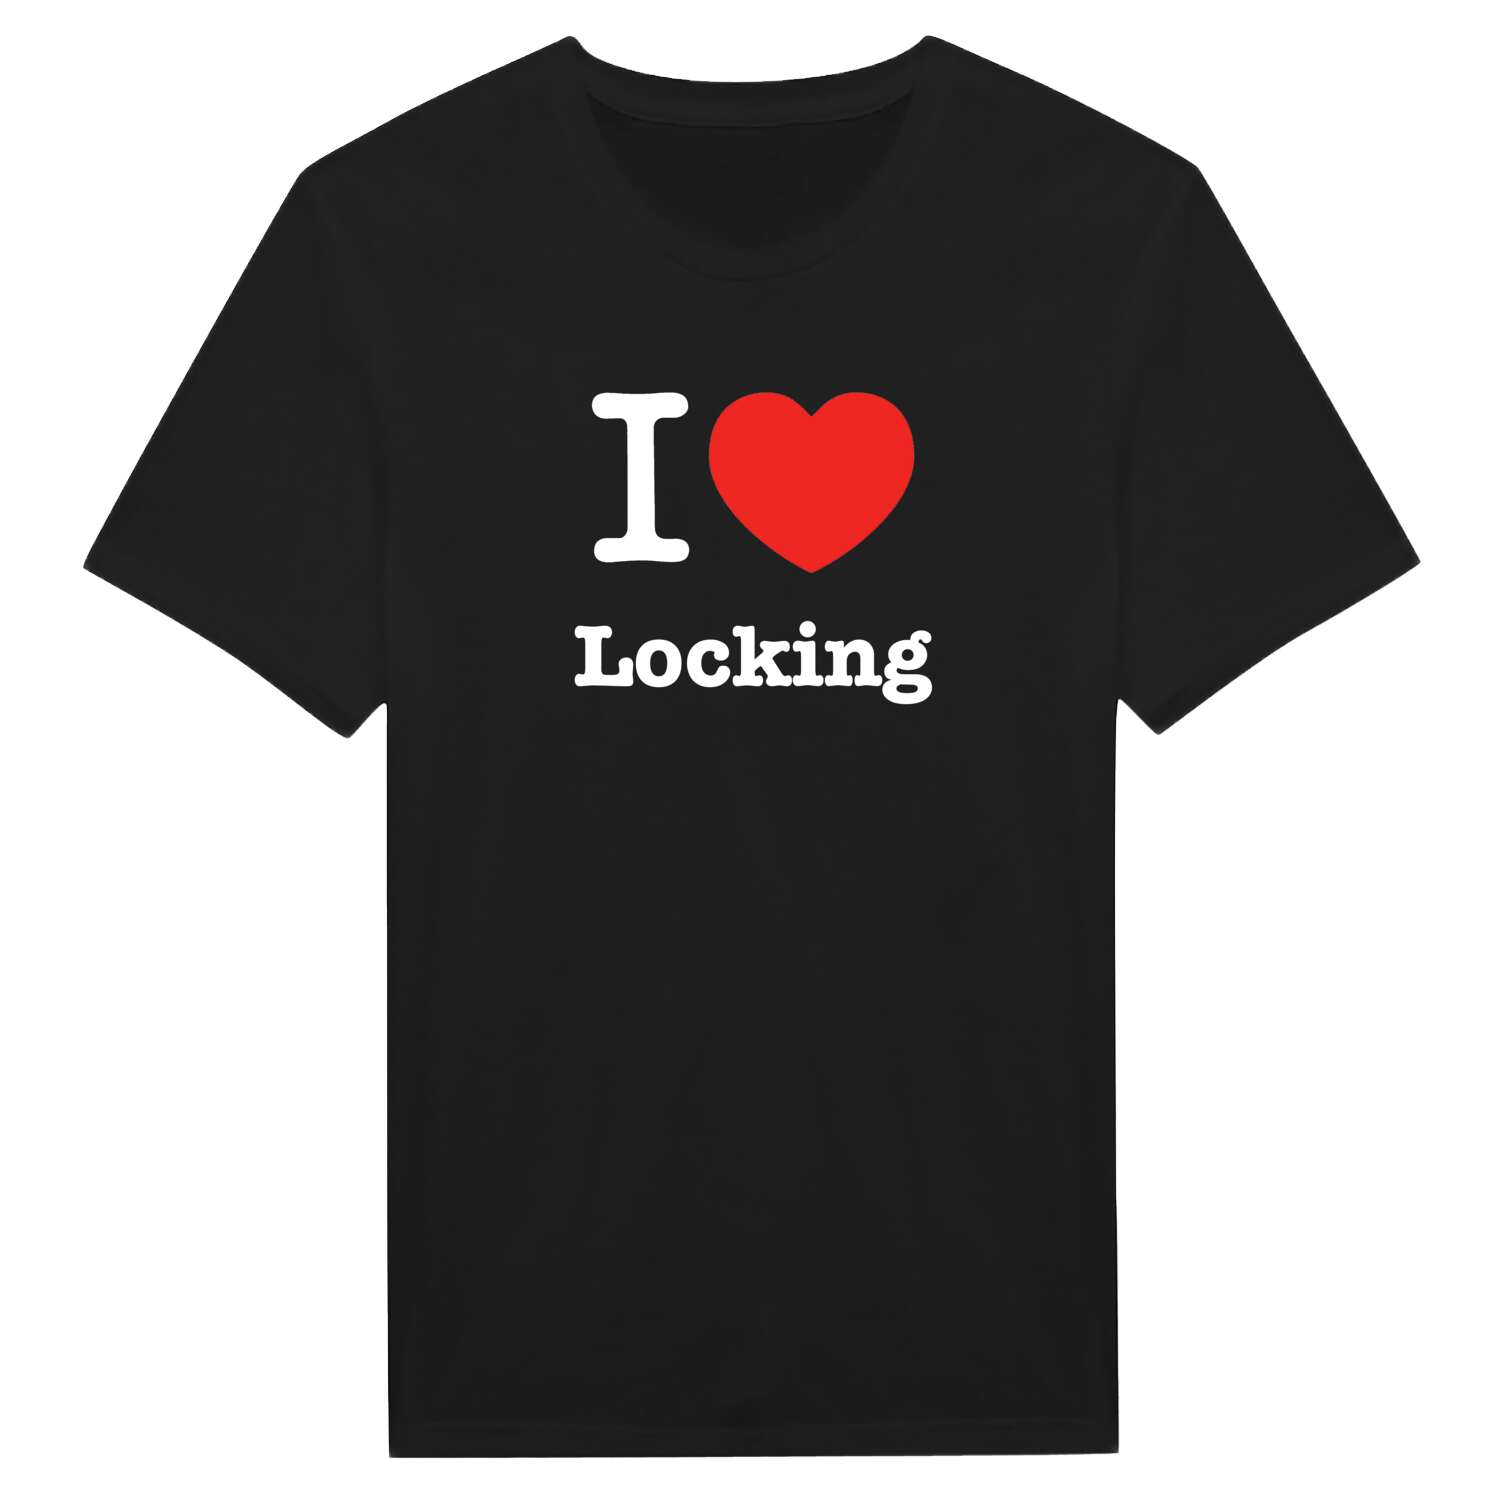 Locking T-Shirt »I love«